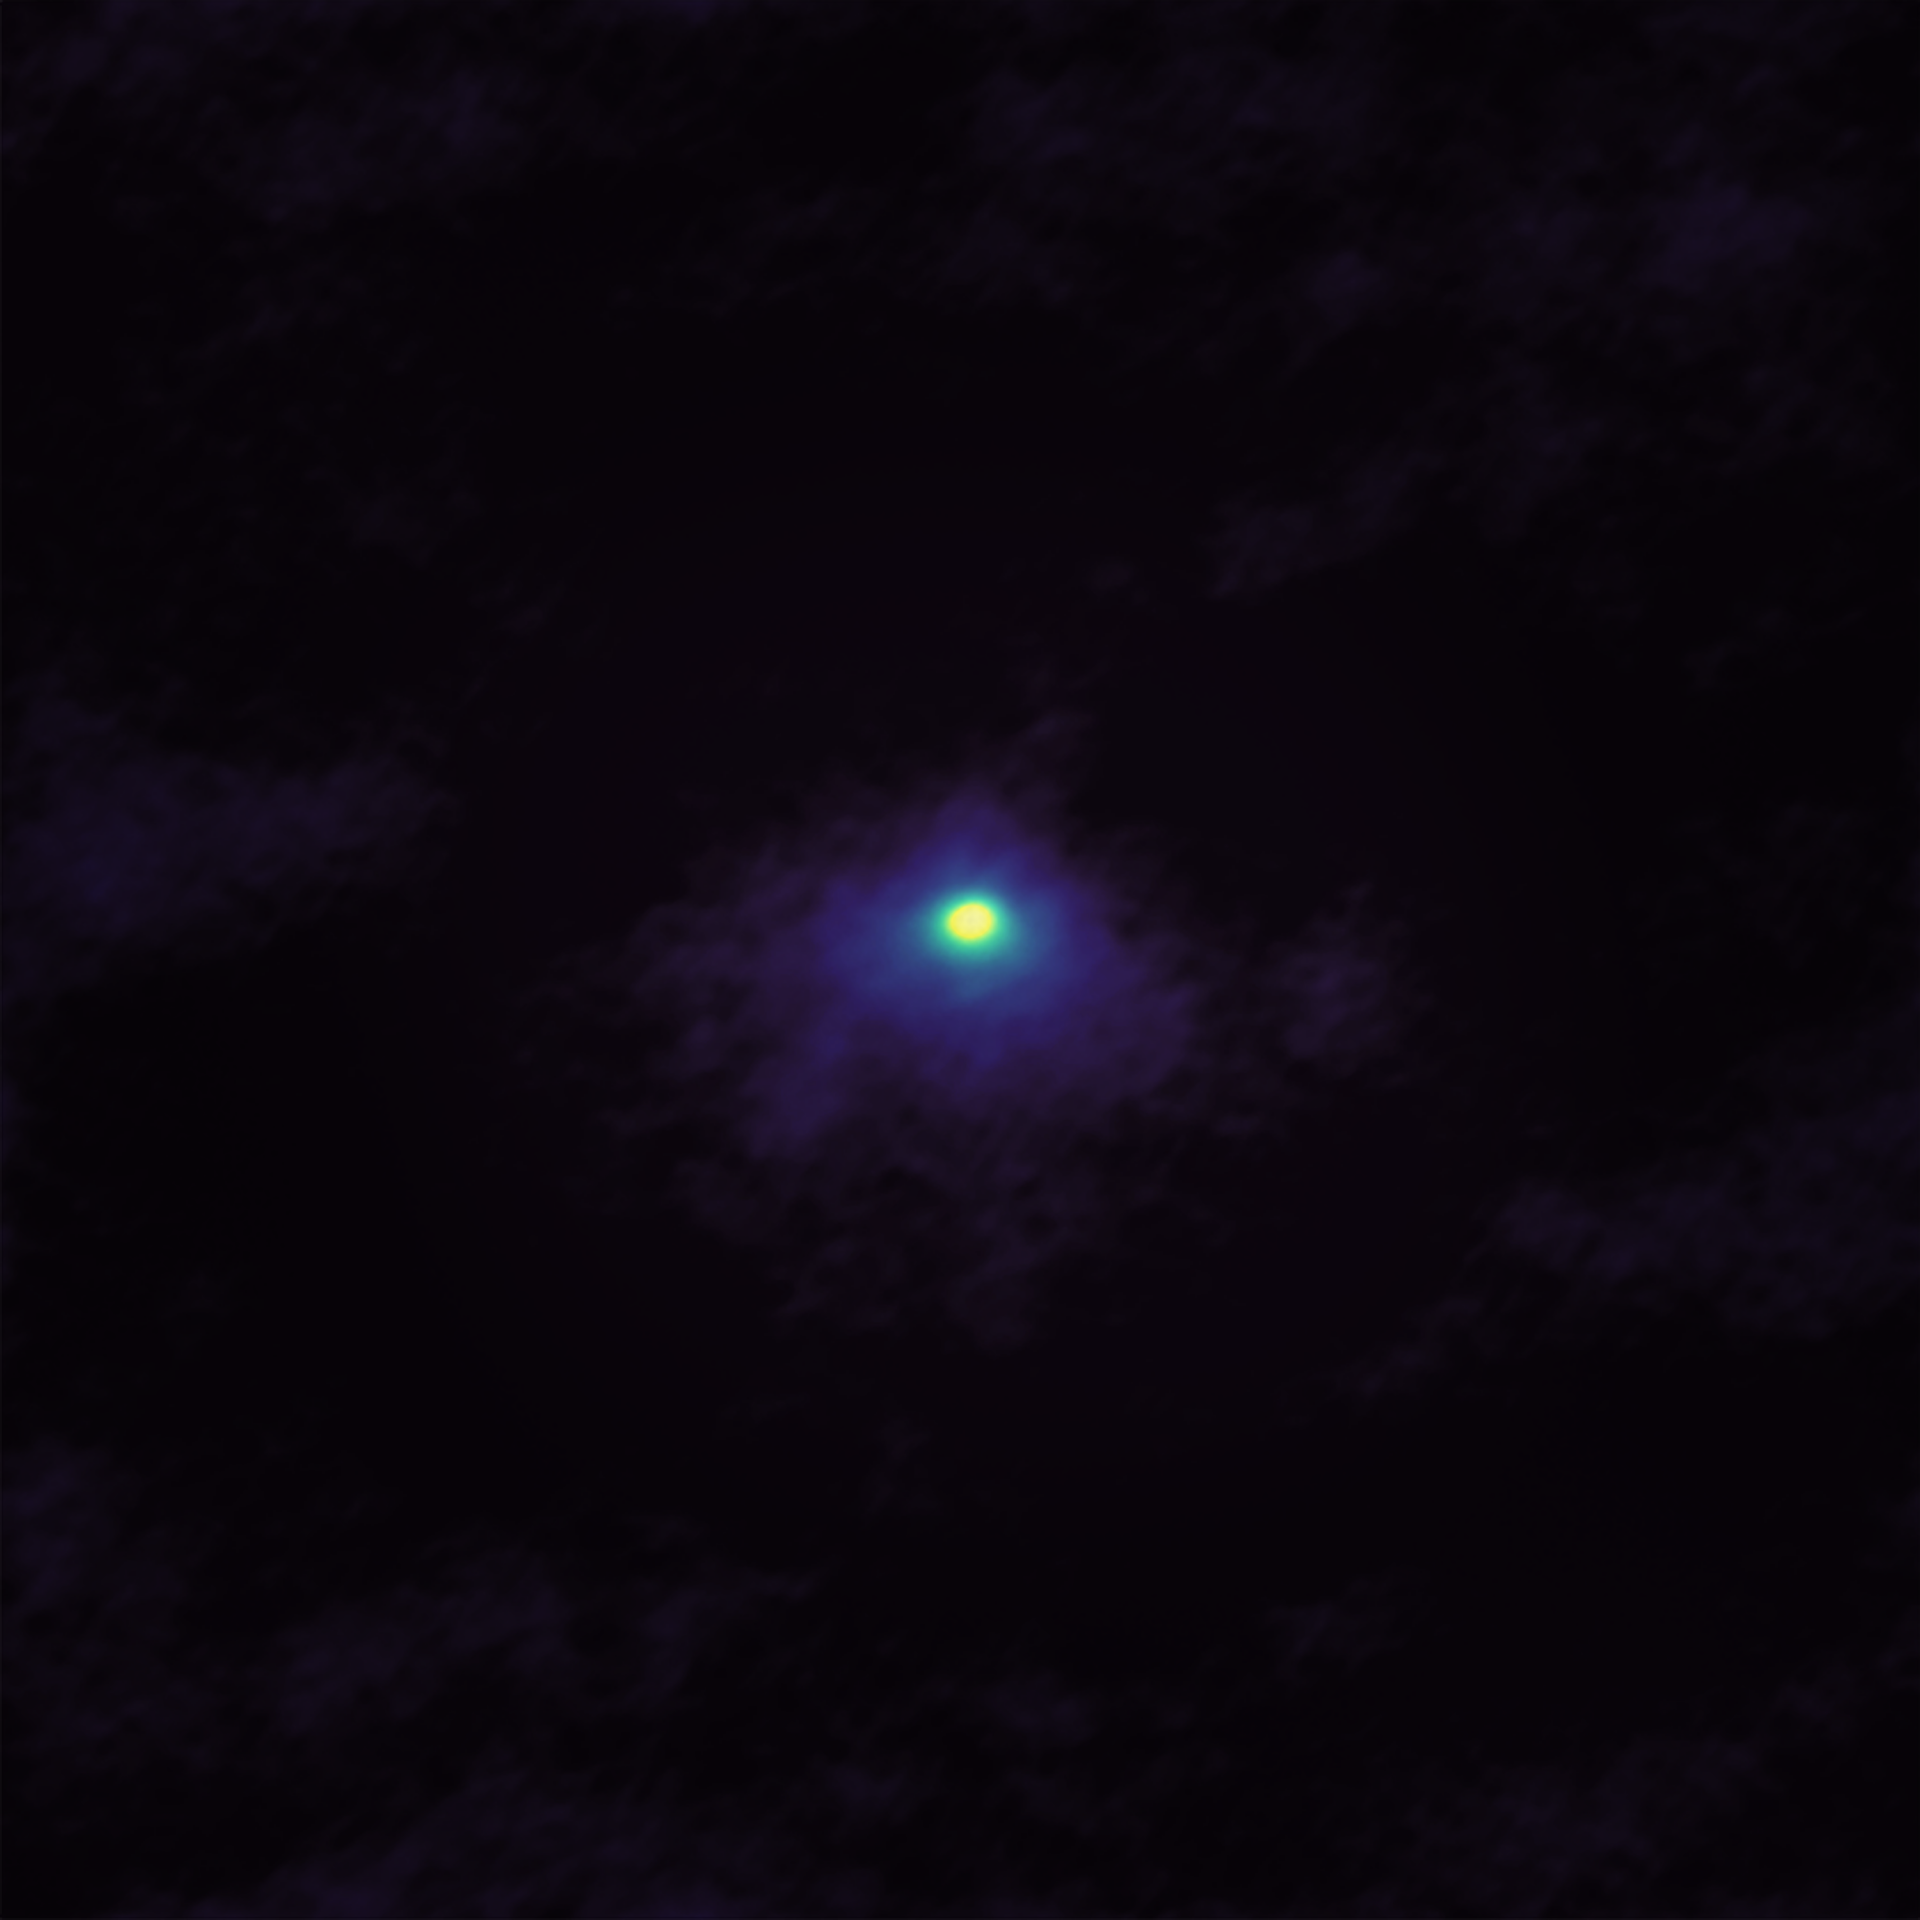 Imagen de ALMA del cometa 46P / Wirtanen tomada el 2 de diciembre cuando el cometa se acercaba a la Tierra. La imagen de ALMA muestra la concentración y distribución de las moléculas de cianuro de hidrógeno (HCN) cerca del centro del coma del cometa. Crédito: ALMA (ESO / NAOJ / NRAO); M. Cordiner, NASA / CUA